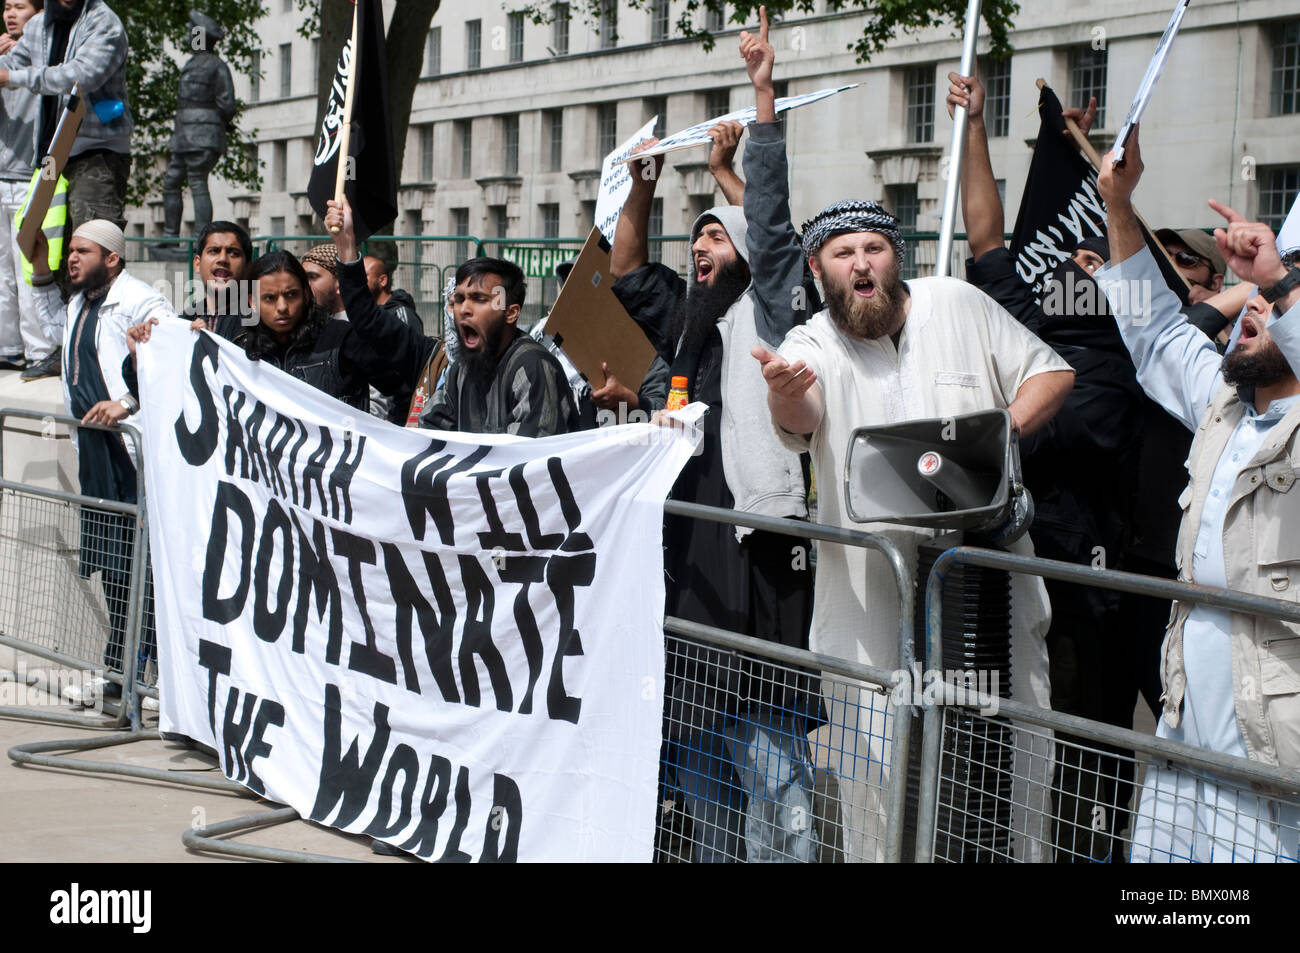 Islamistische Demonstranten mit dem Banner "die Scharia wird die Welt beherrschen", Demonstranten des Sharia Law, Whitehall, London, Großbritannien, Juni 2010 Stockfoto